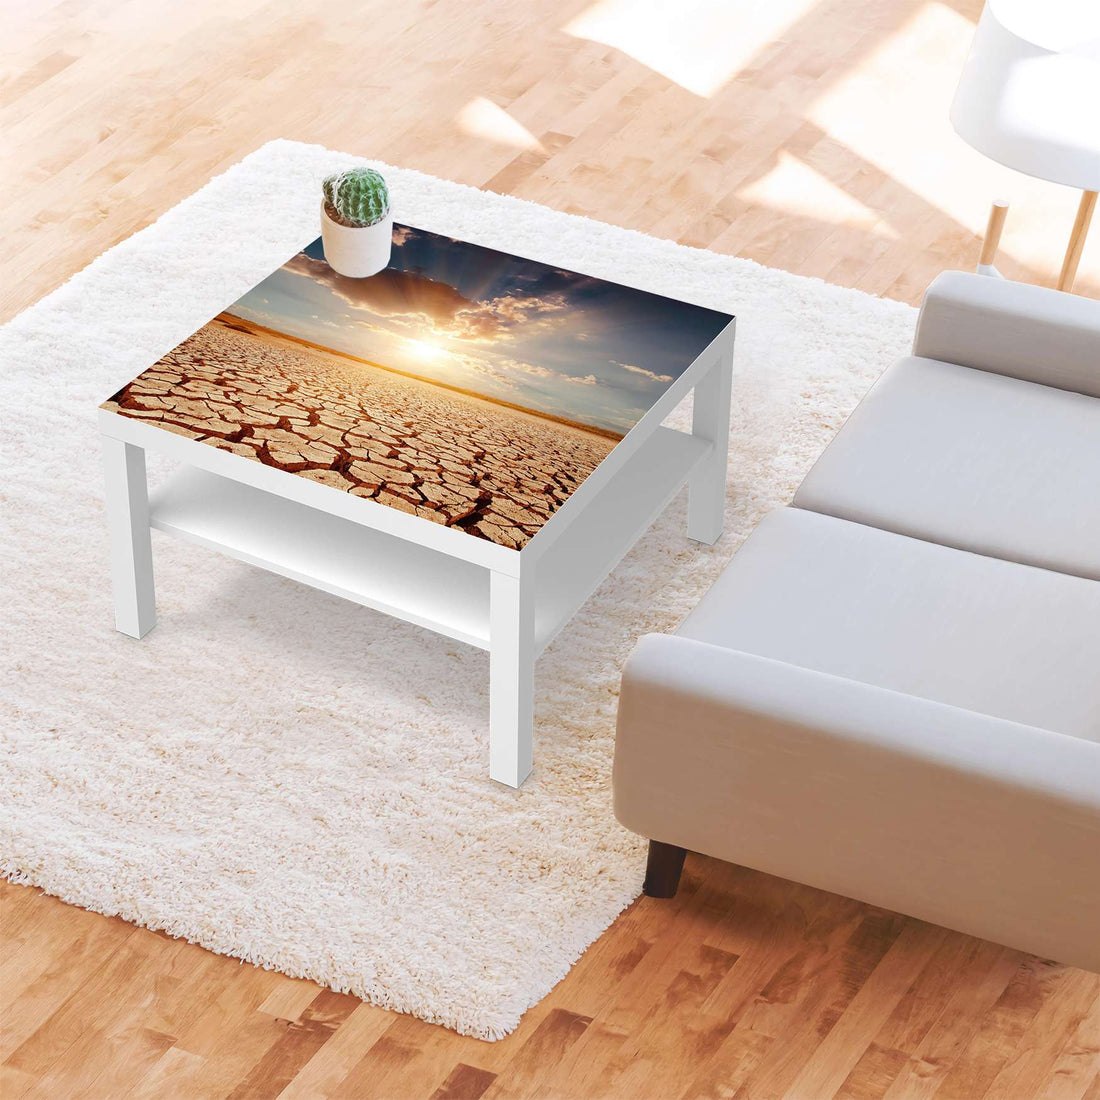 Selbstklebende Folie Savanne - IKEA Lack Tisch 78x78 cm - Wohnzimmer